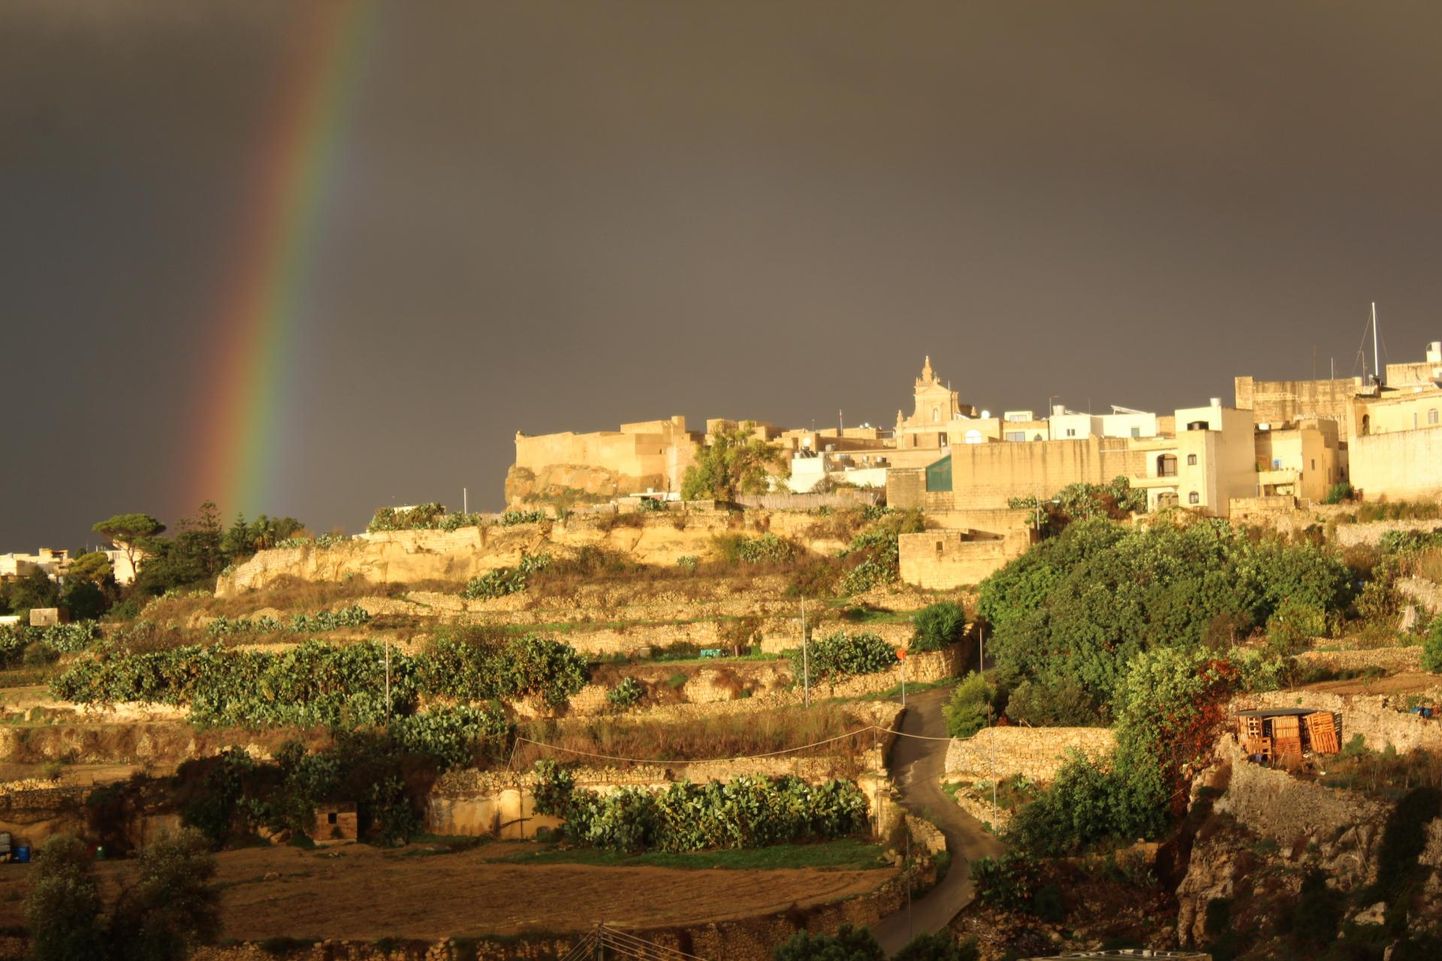 Päikesepaistelisi päevi on Maltal umbes 300. Kui aga juba kord sajab, siis muutuvad tänavad koskedeks, vihmavarjudest suurt abi ei ole. Għawdexi ehk Gozo saare pealinn Valetta jäi fotole kahe vägeva saju vahelise hetke silmipimestavas päikesesäras, mis kestis vähem kui minut. Edasi kallas hommikuni nagu pangest.